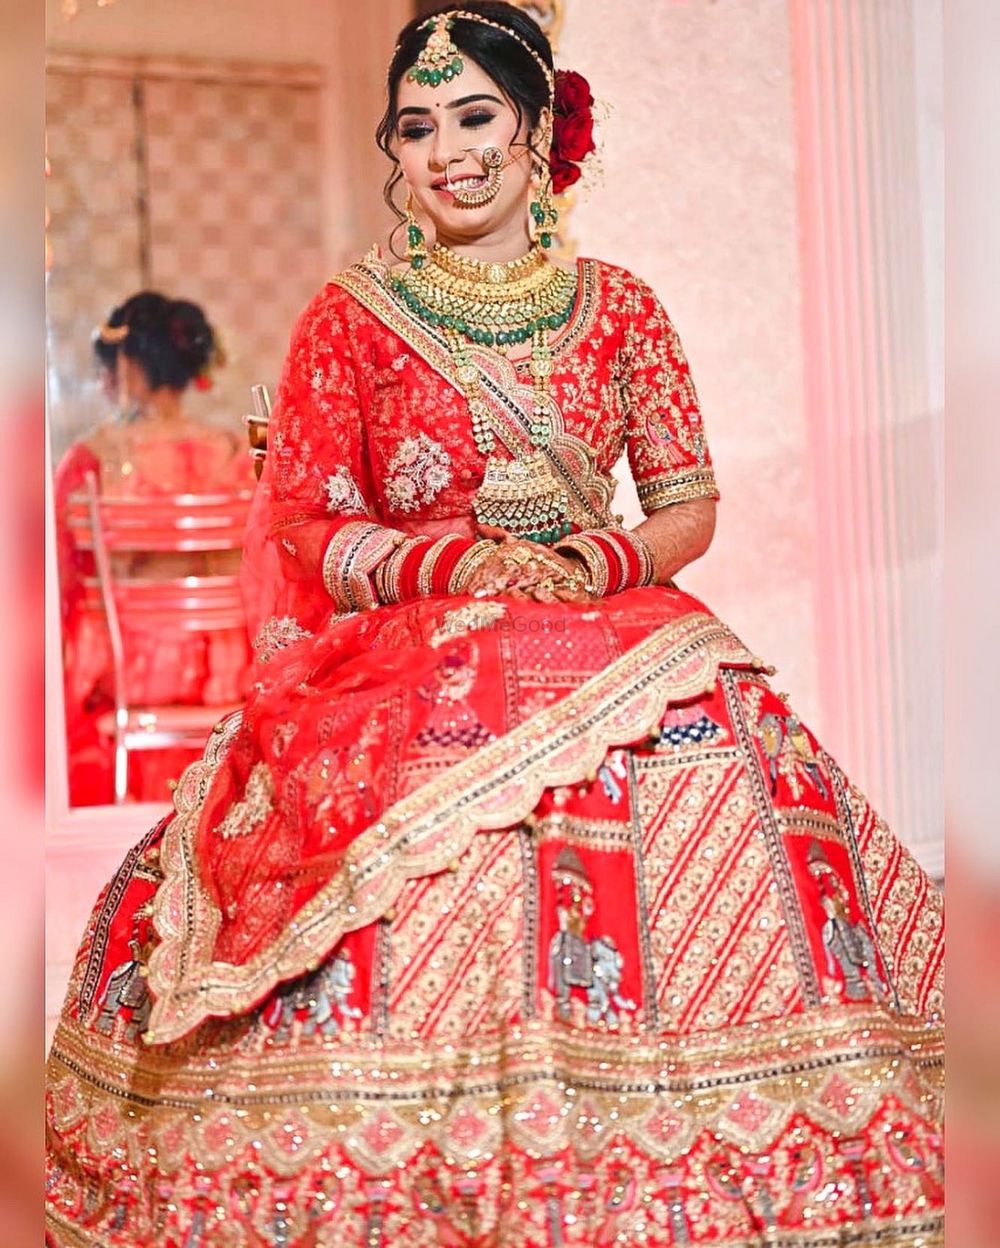 Photo By Ankita Gupta Makeovers - Bridal Makeup